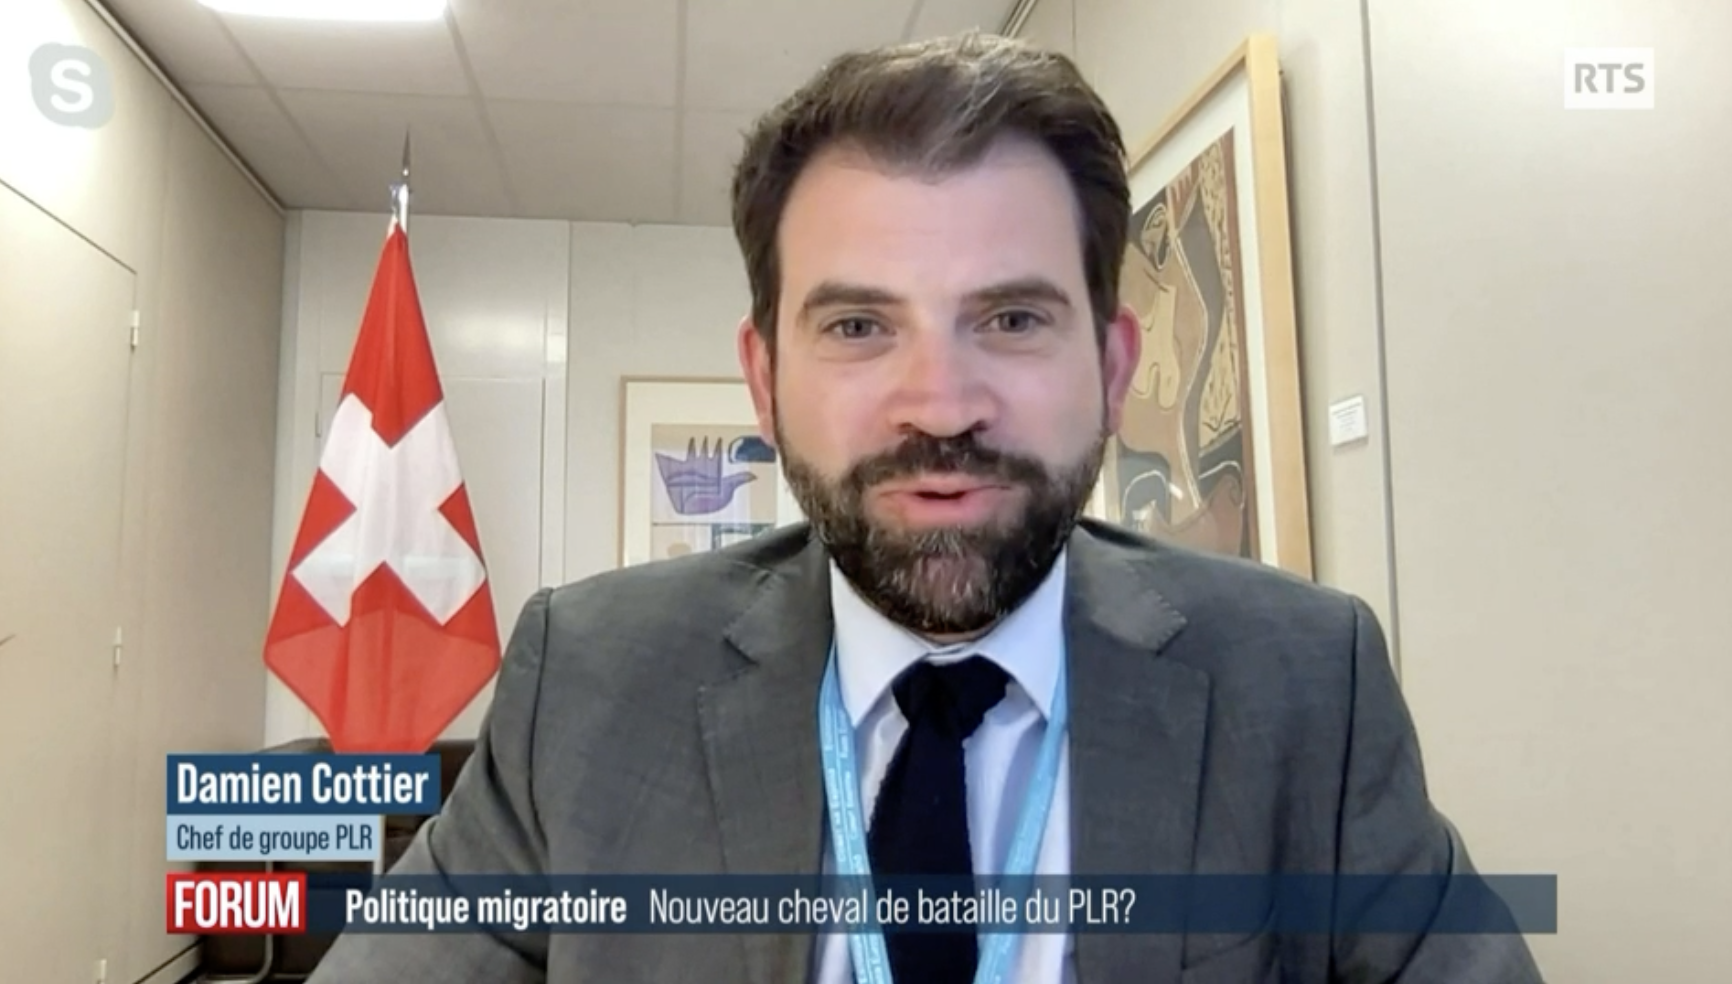 Politique migratoire: "Il ne faut pas tout fermer, ni tout ouvrir" selon Damien Cottier (RTS)